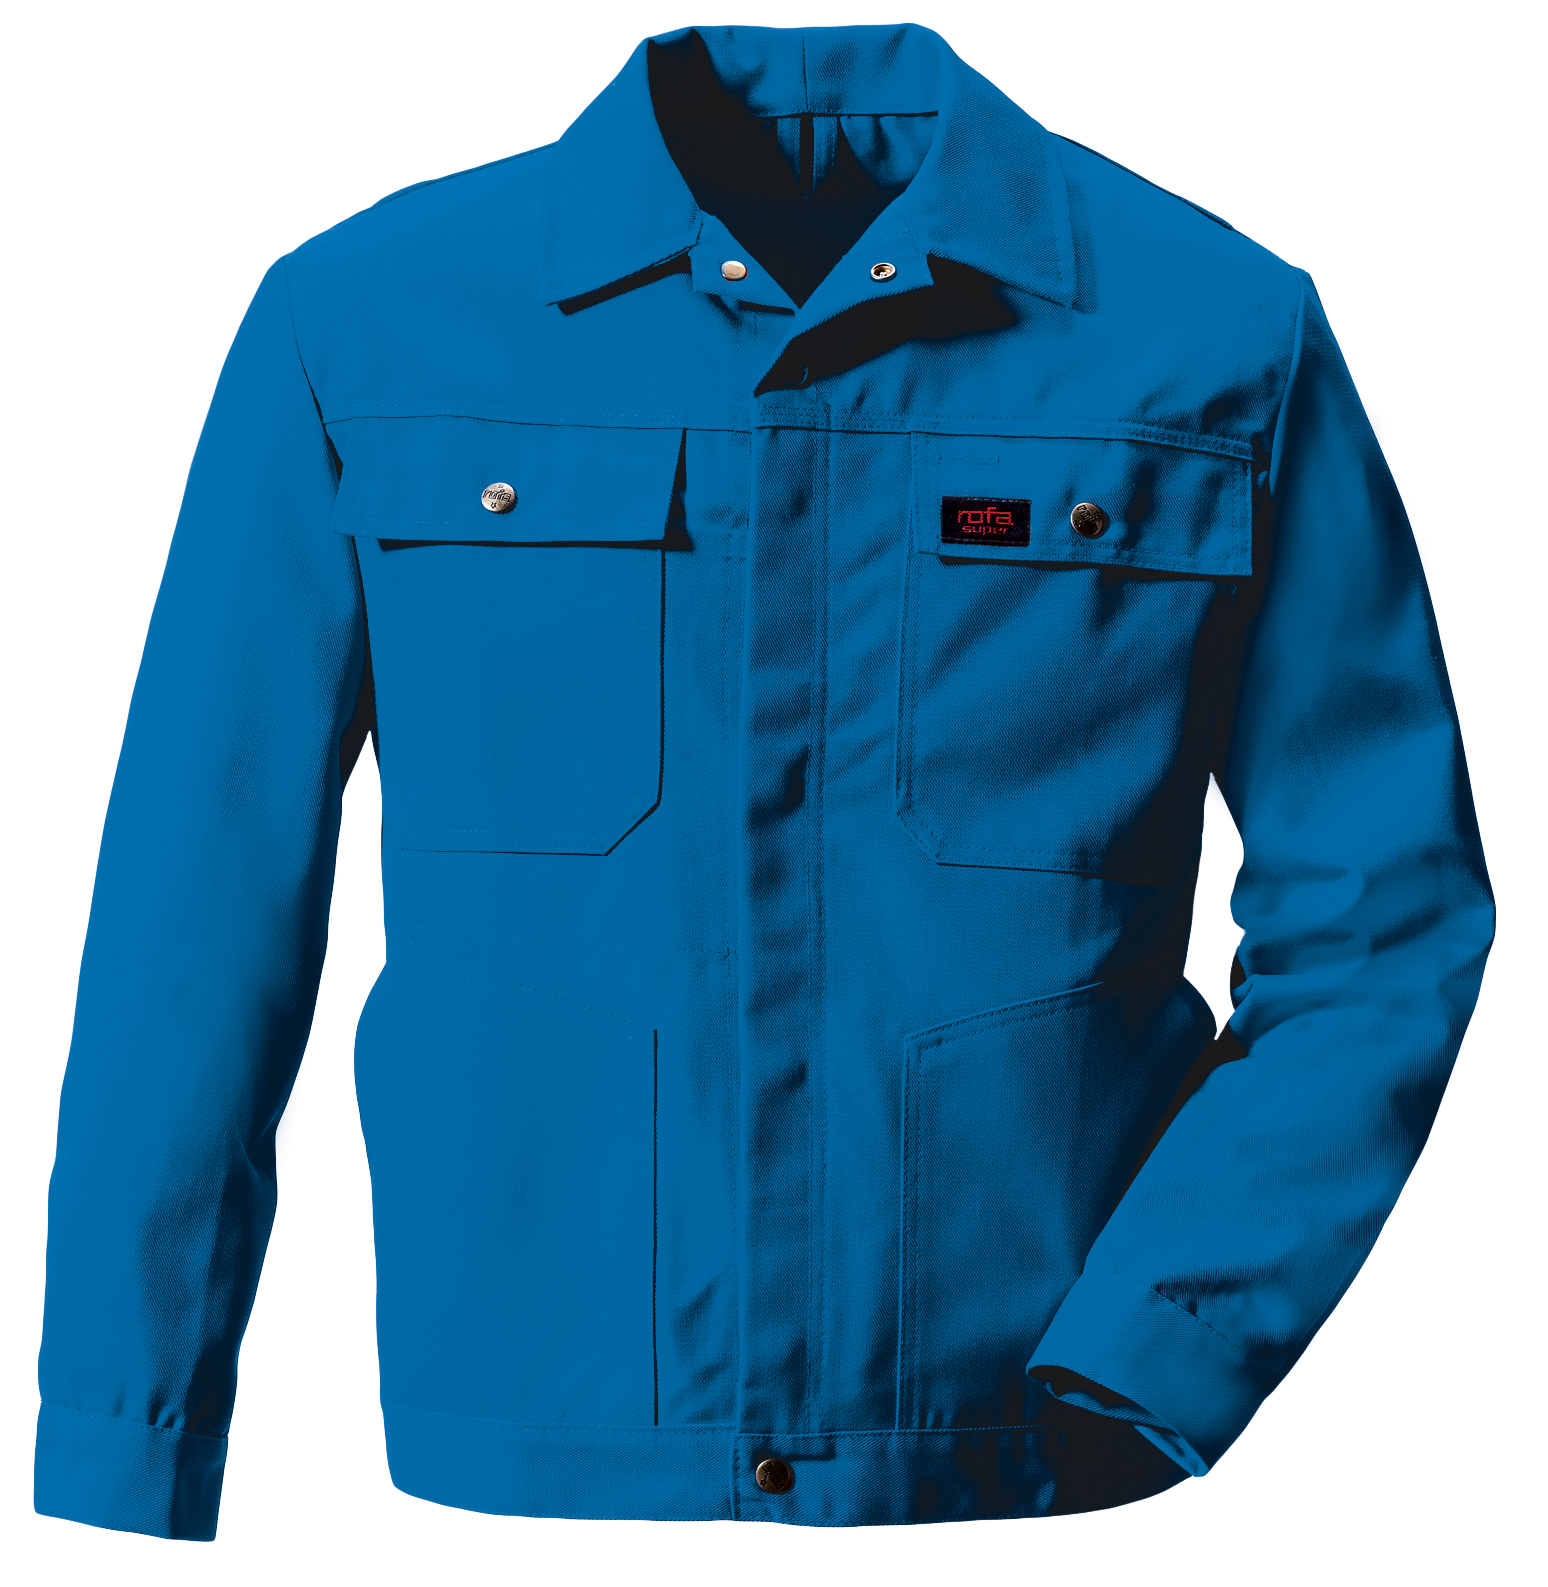 ROFA Blousonjacke Arbeitsjacke Berufsjacke Schutzjacke Arbeitskleidung Berufskleidung Super kornblau ca 360 g